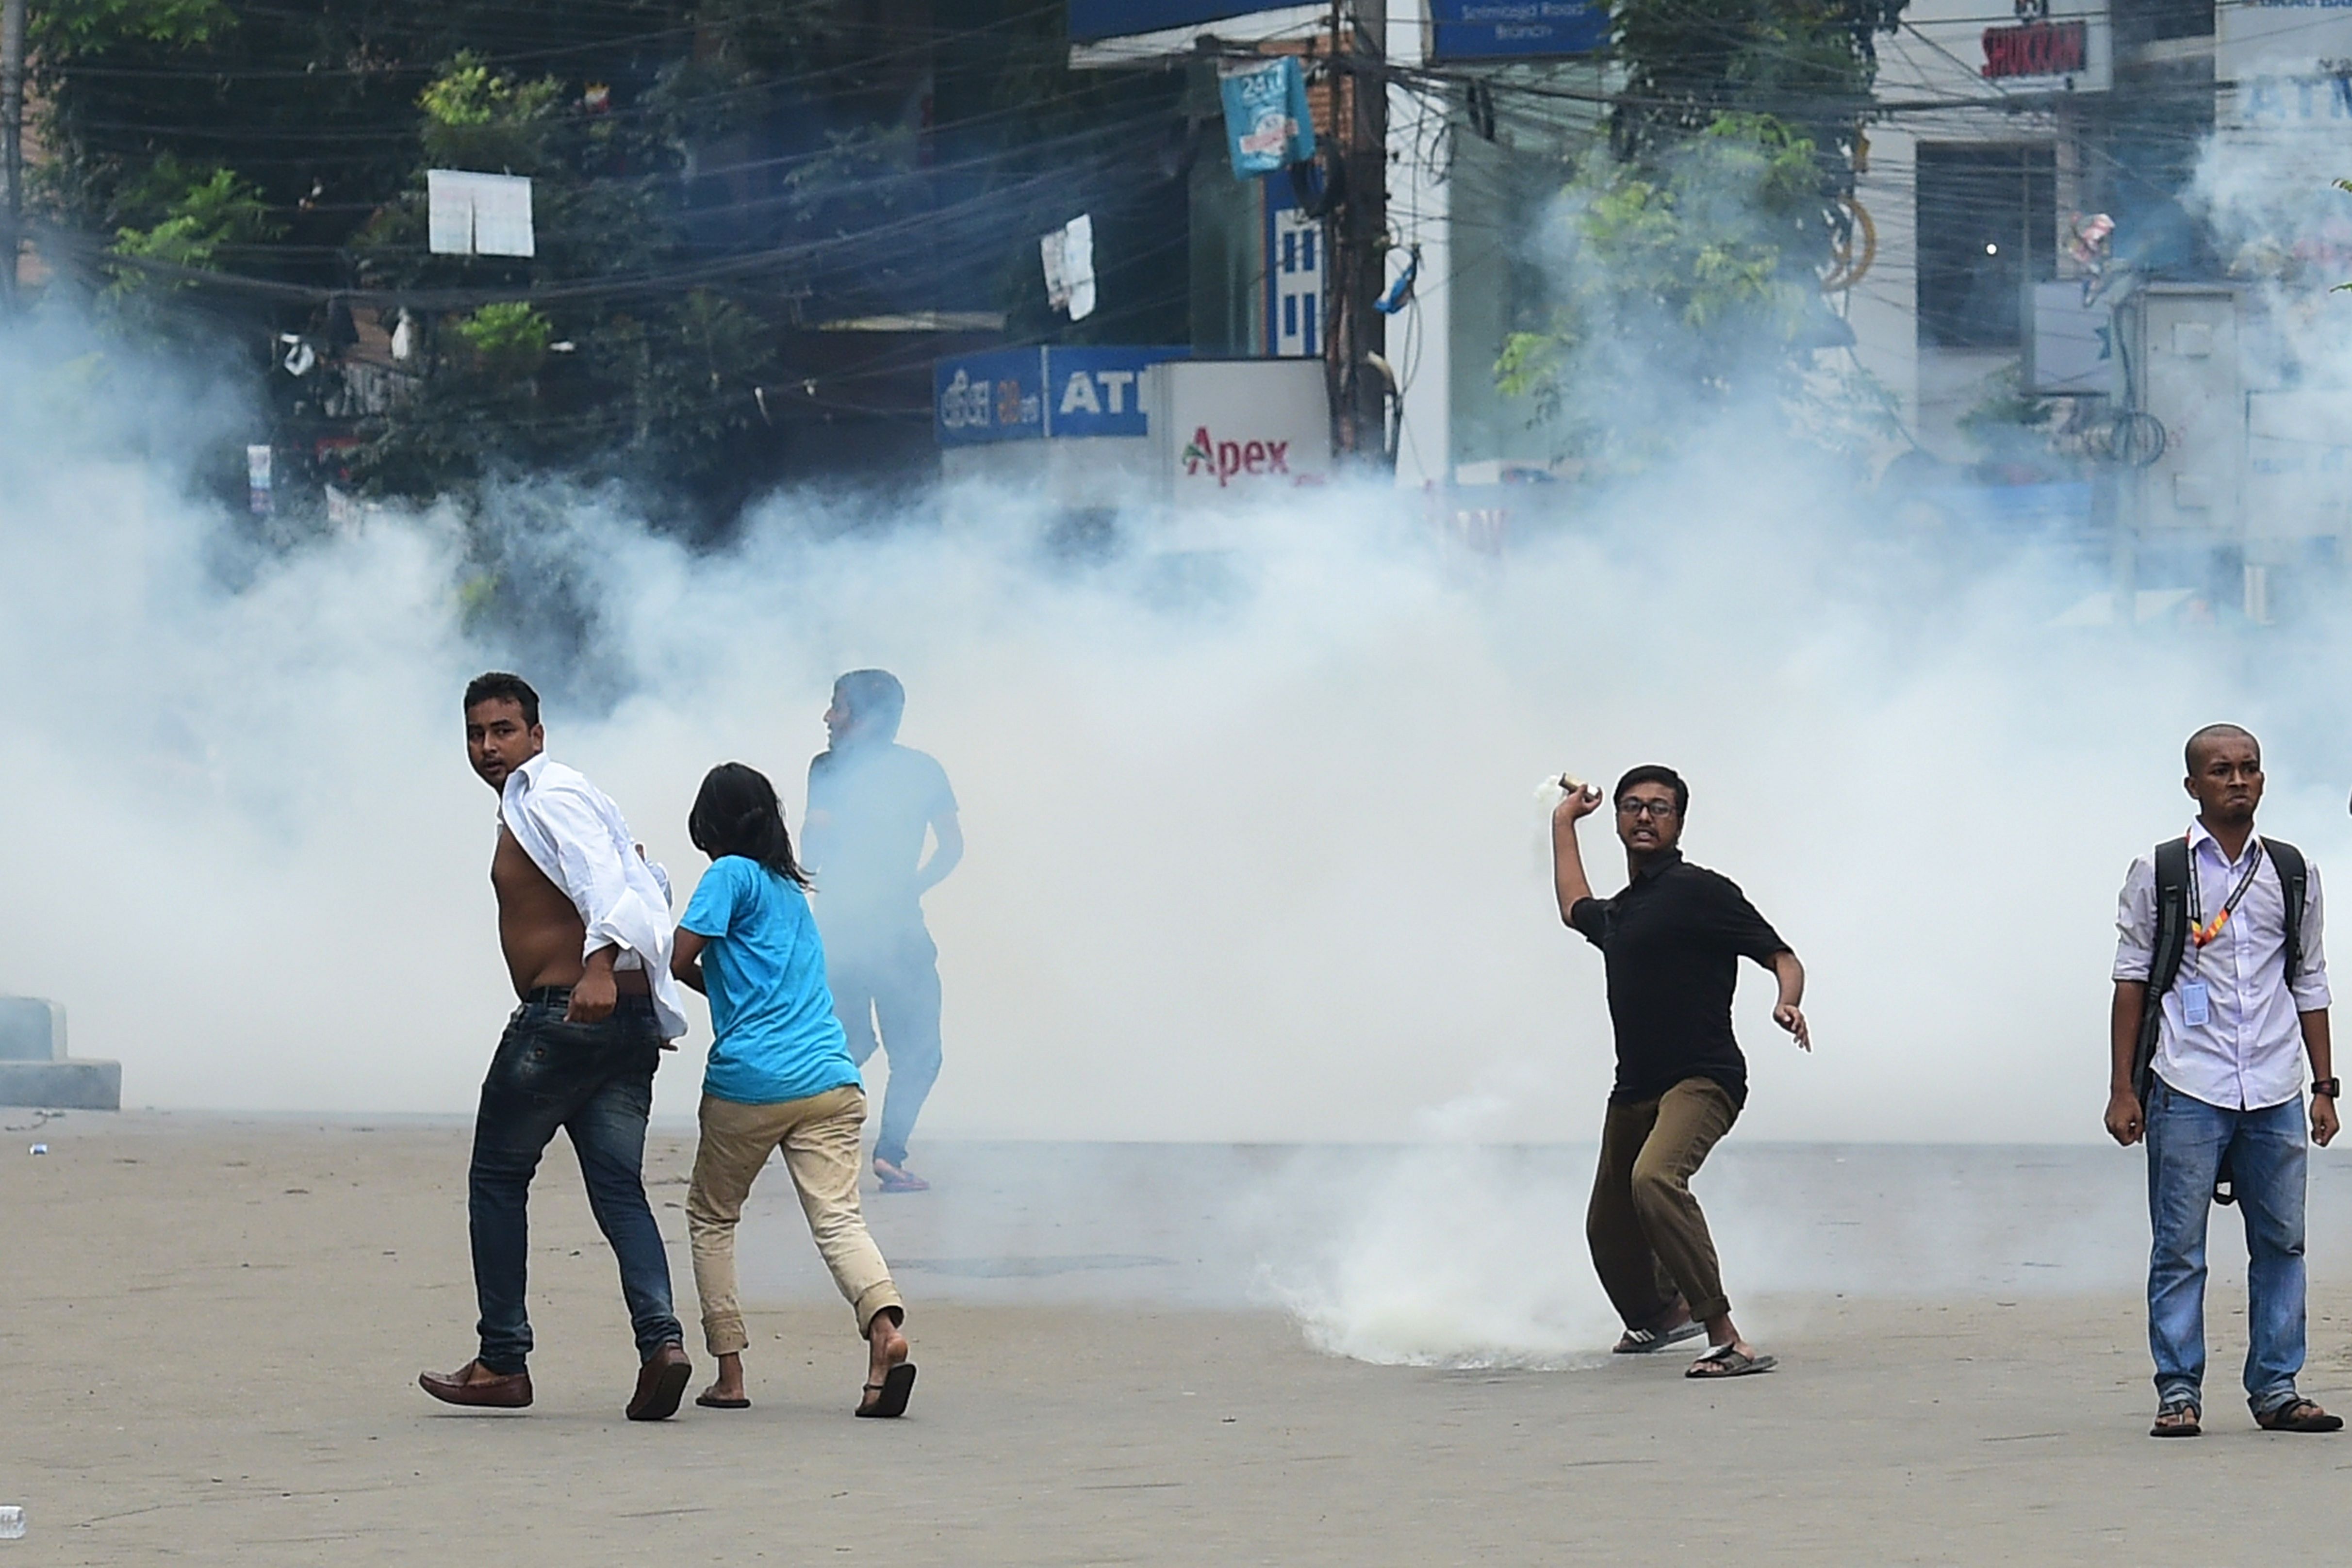 إطلاق الغاز المسيل للدموع على المتظاهرين